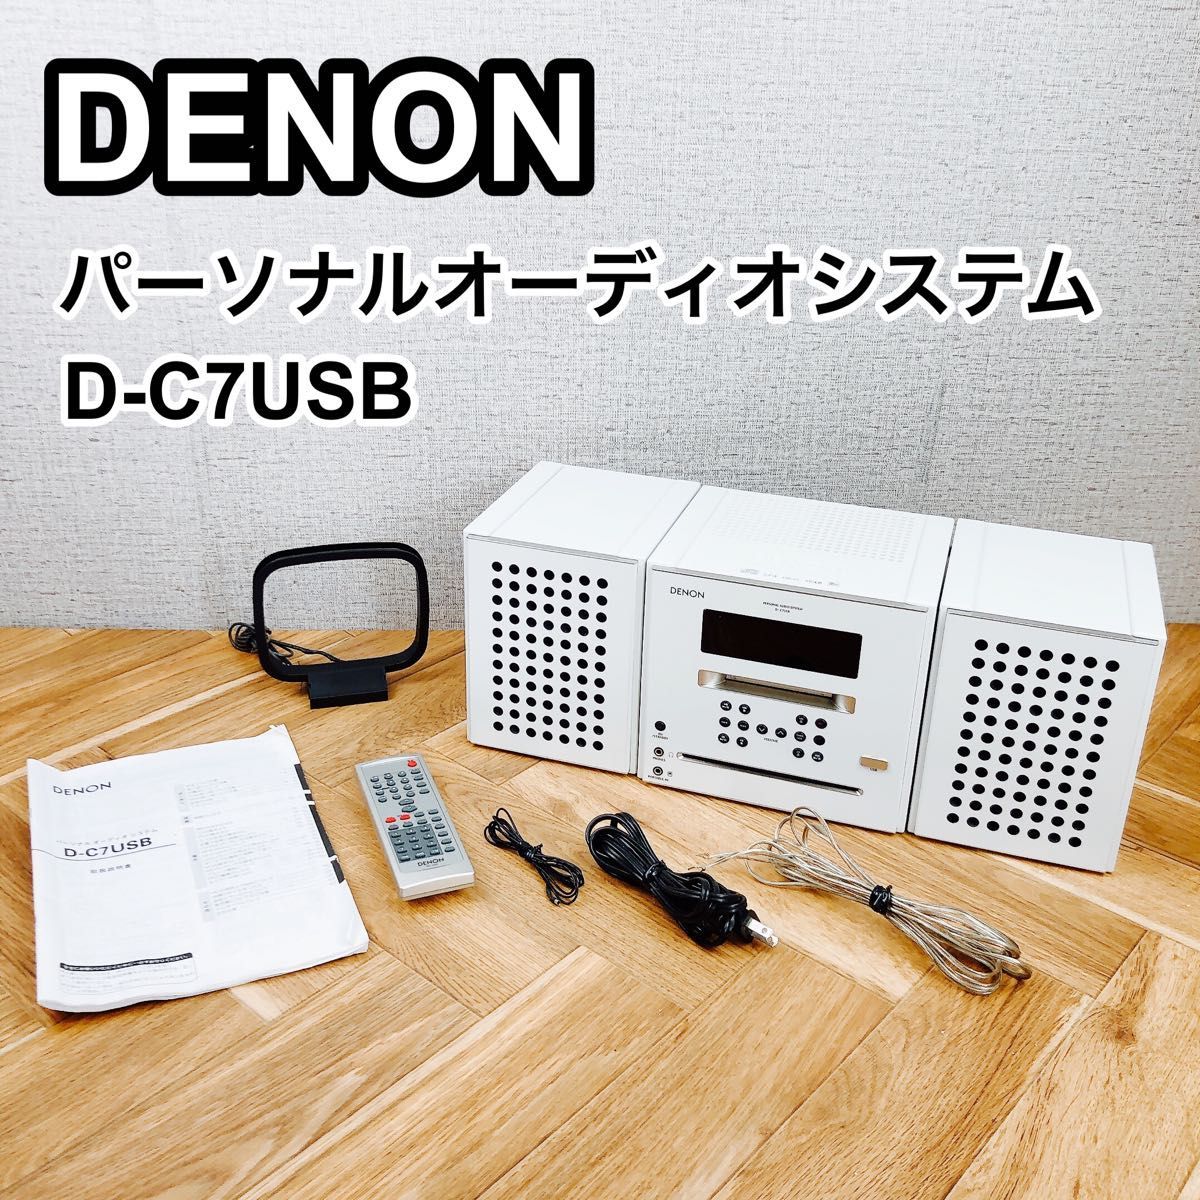 DENON D-C7USB オークション比較 - 価格.com